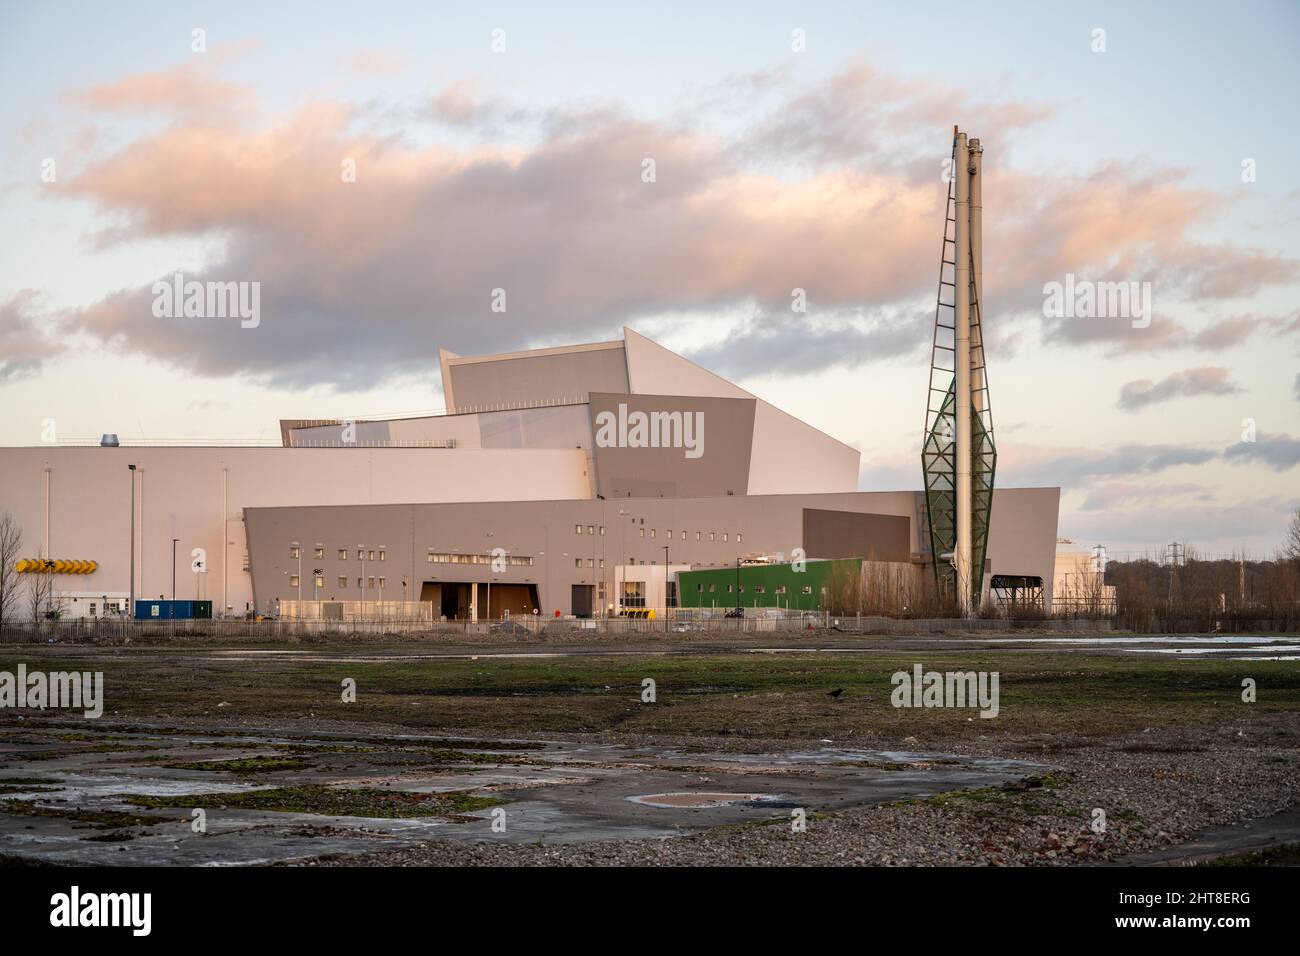 Das neue Avonmouth Resource Recovery Center von Viridor, eine Energie aus Müllverbrennungsanlage und Kunststoff-Recycling-Anlage in Bristol. Stockfoto